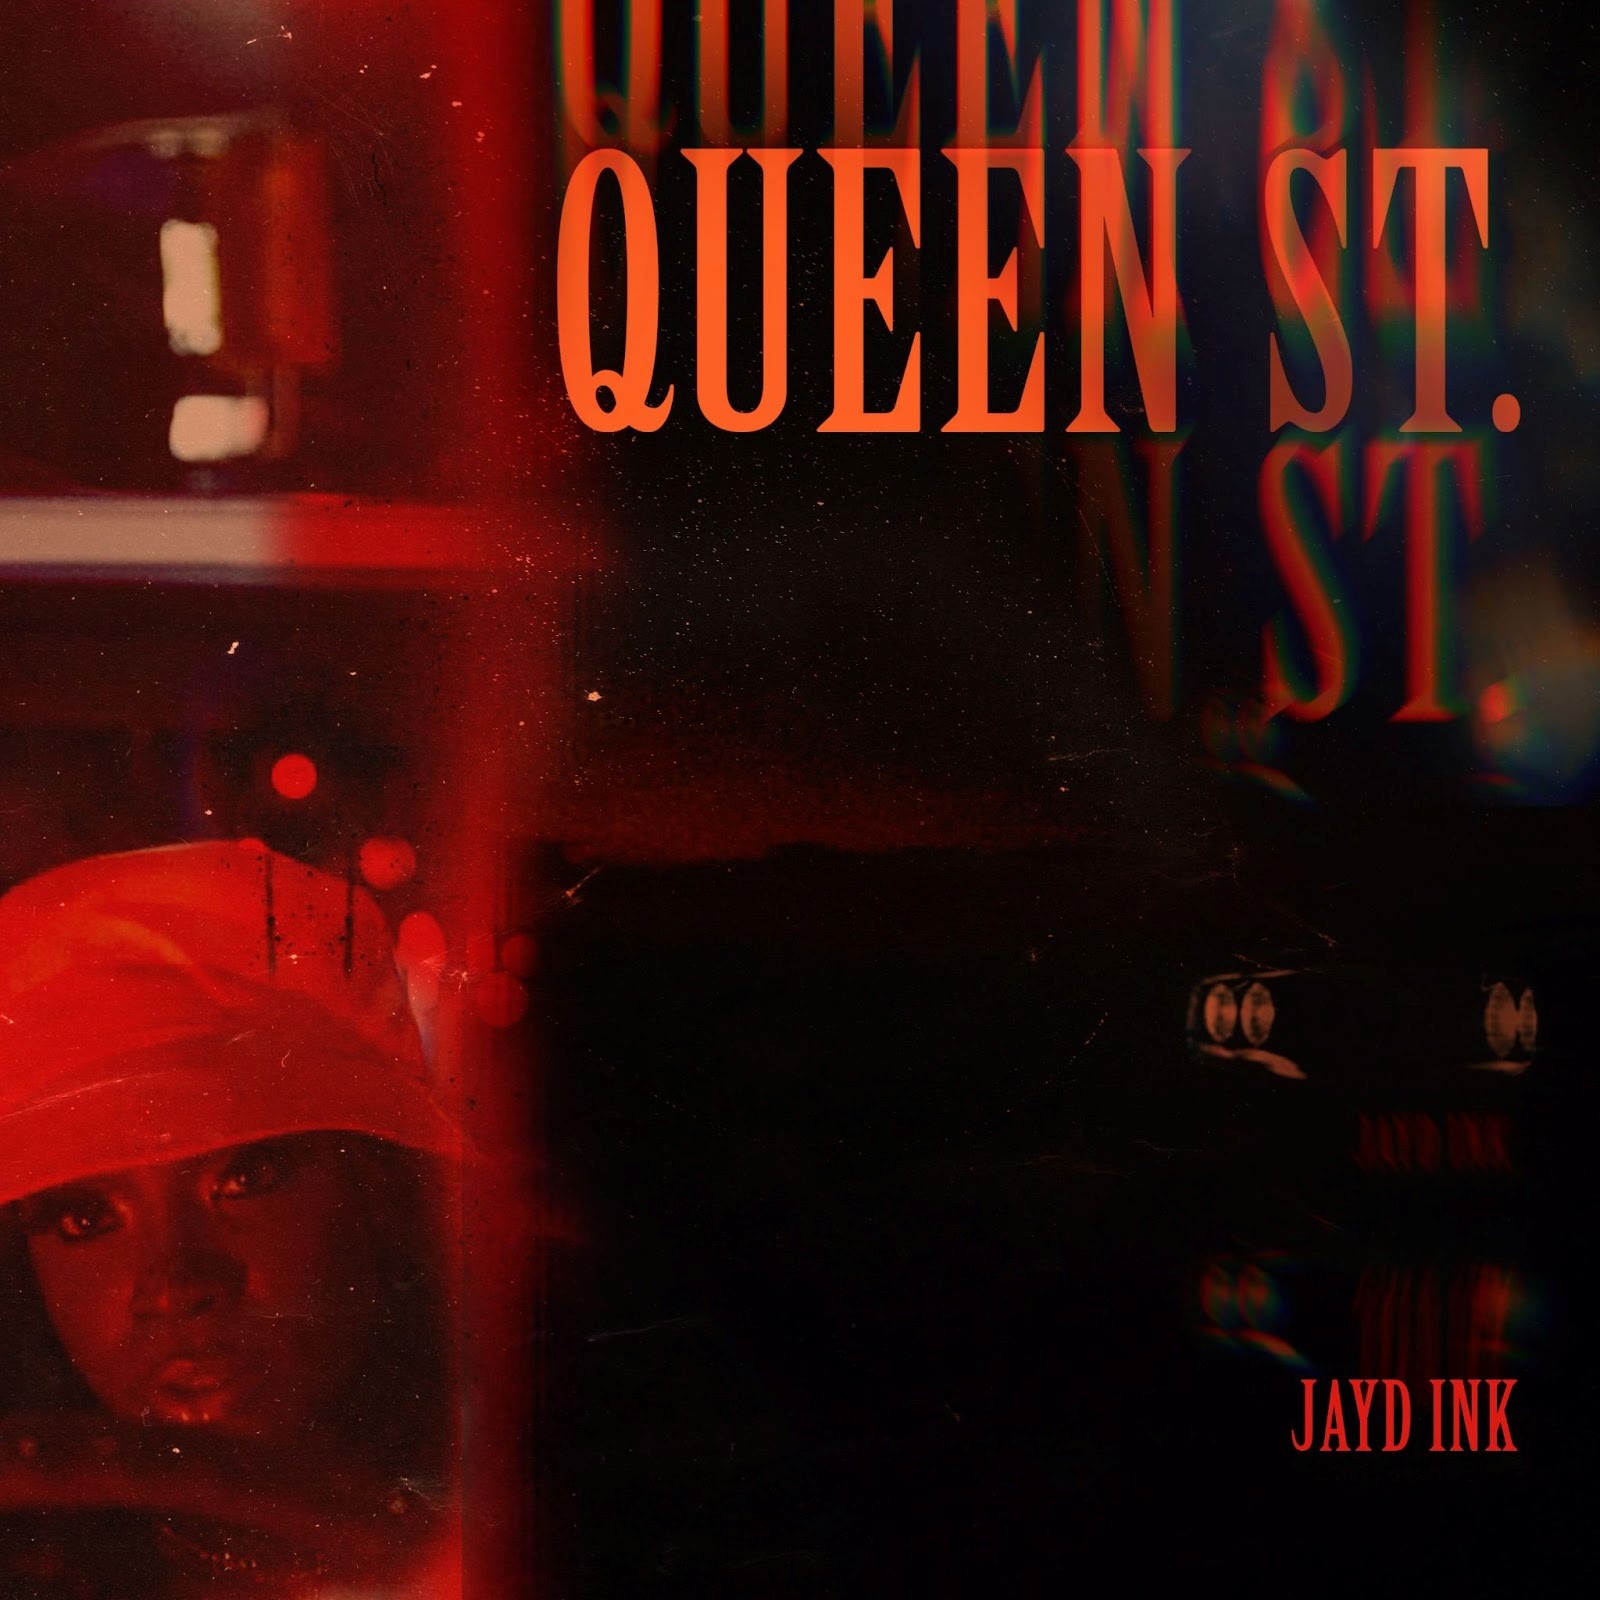 Jayd Ink “Queen St” (Video)